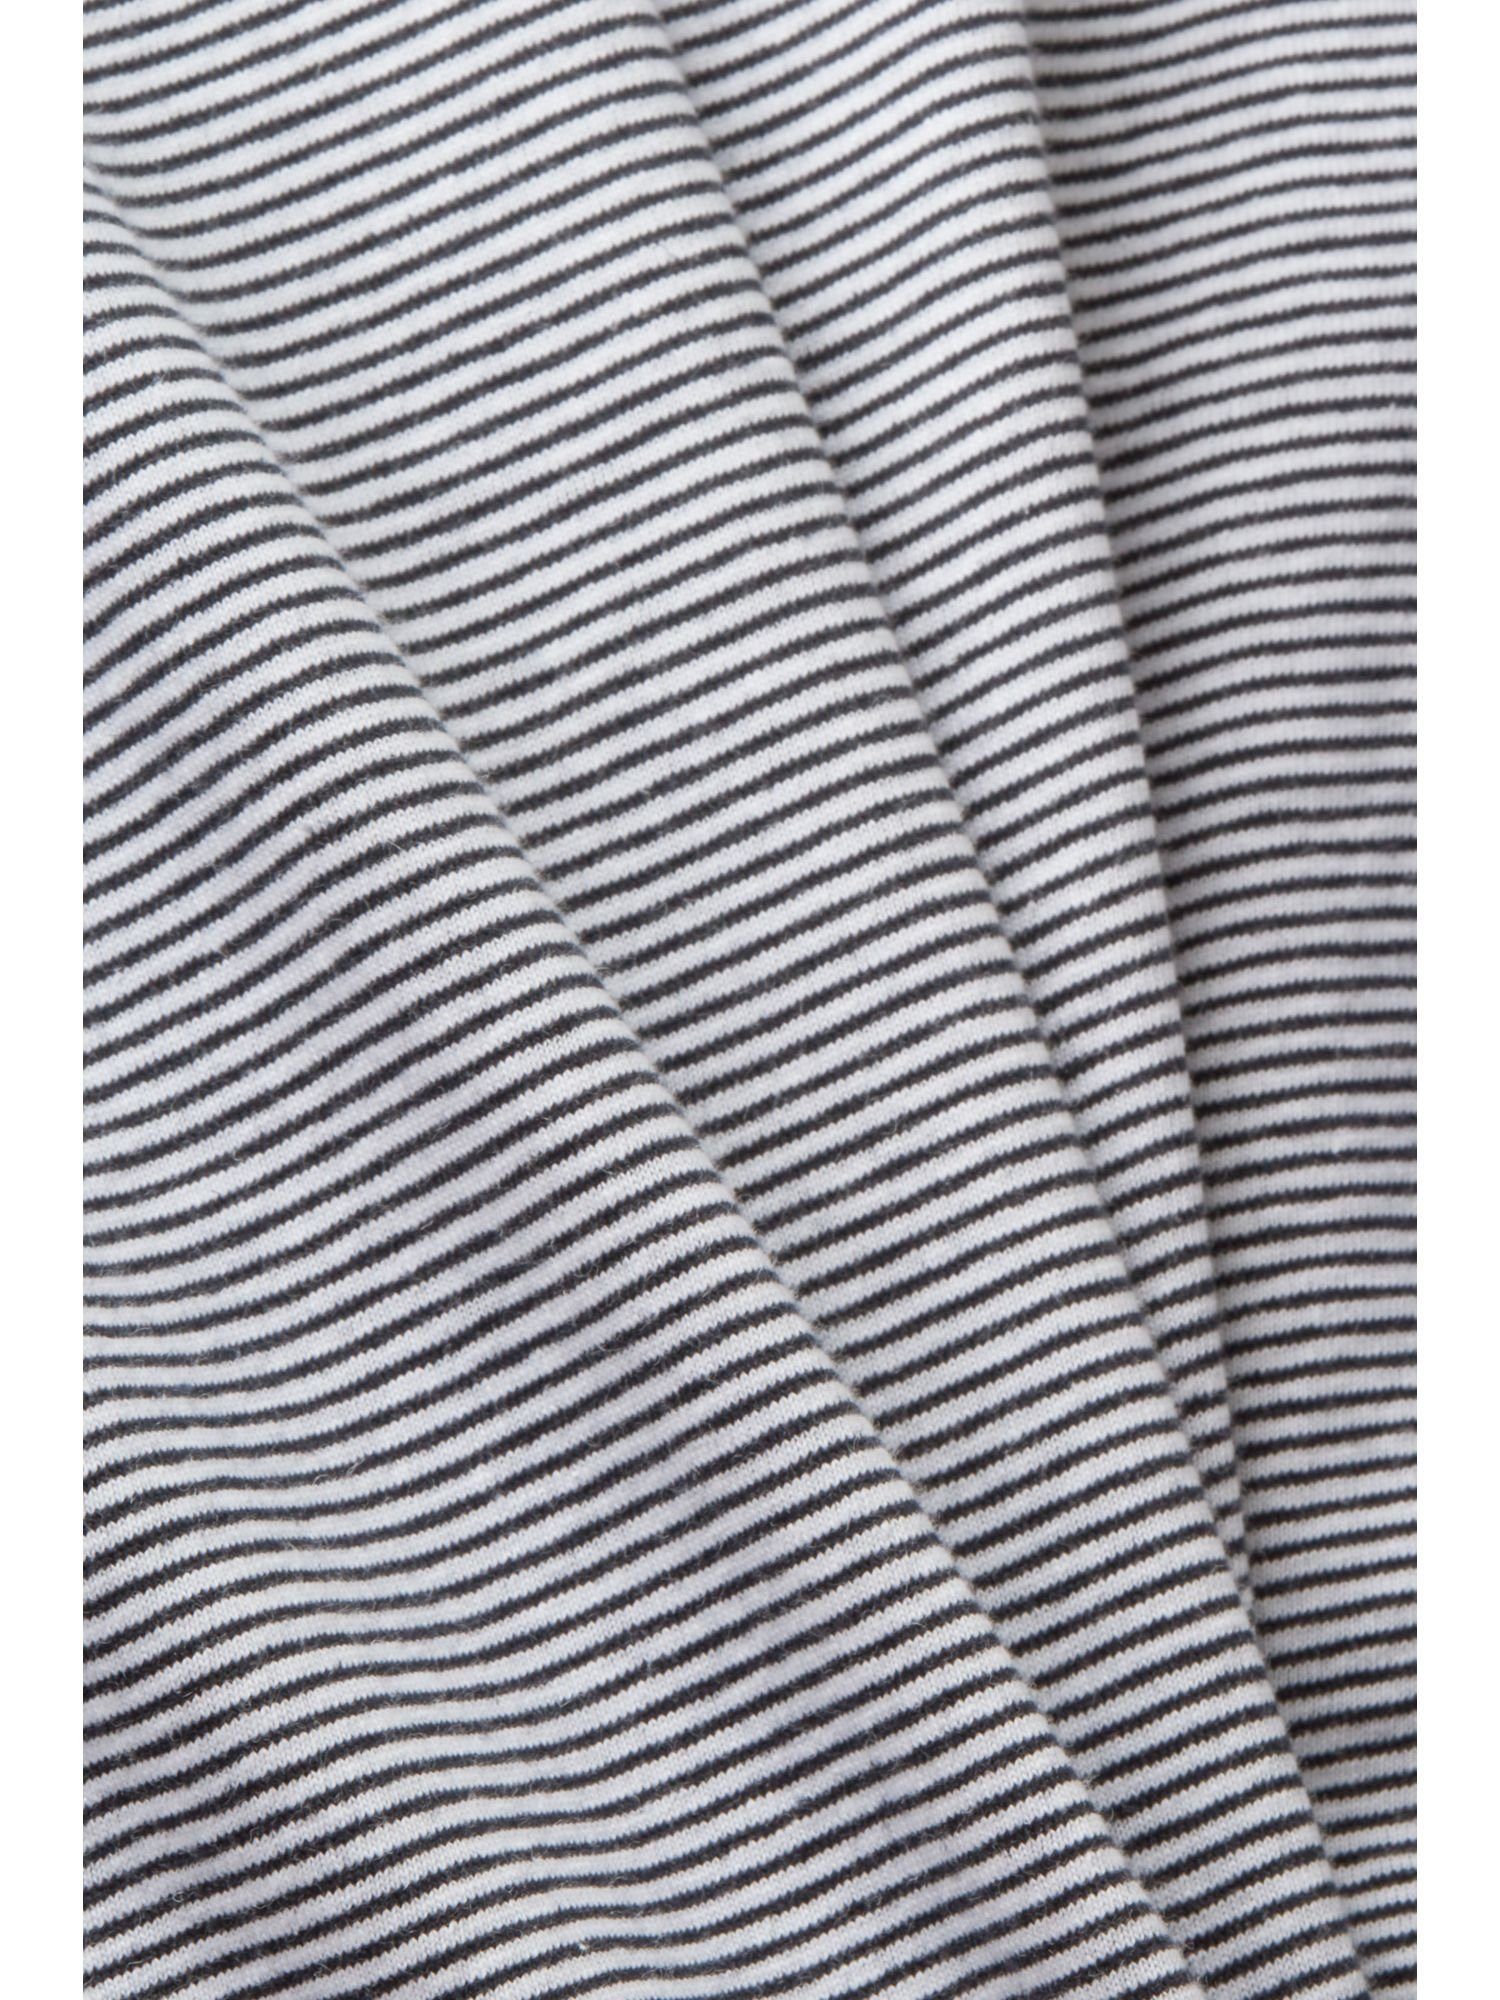 Esprit Collection Poloshirt Gestreiftes NAVY Baumwolle-Leinen-Mix Jersey Poloshirt